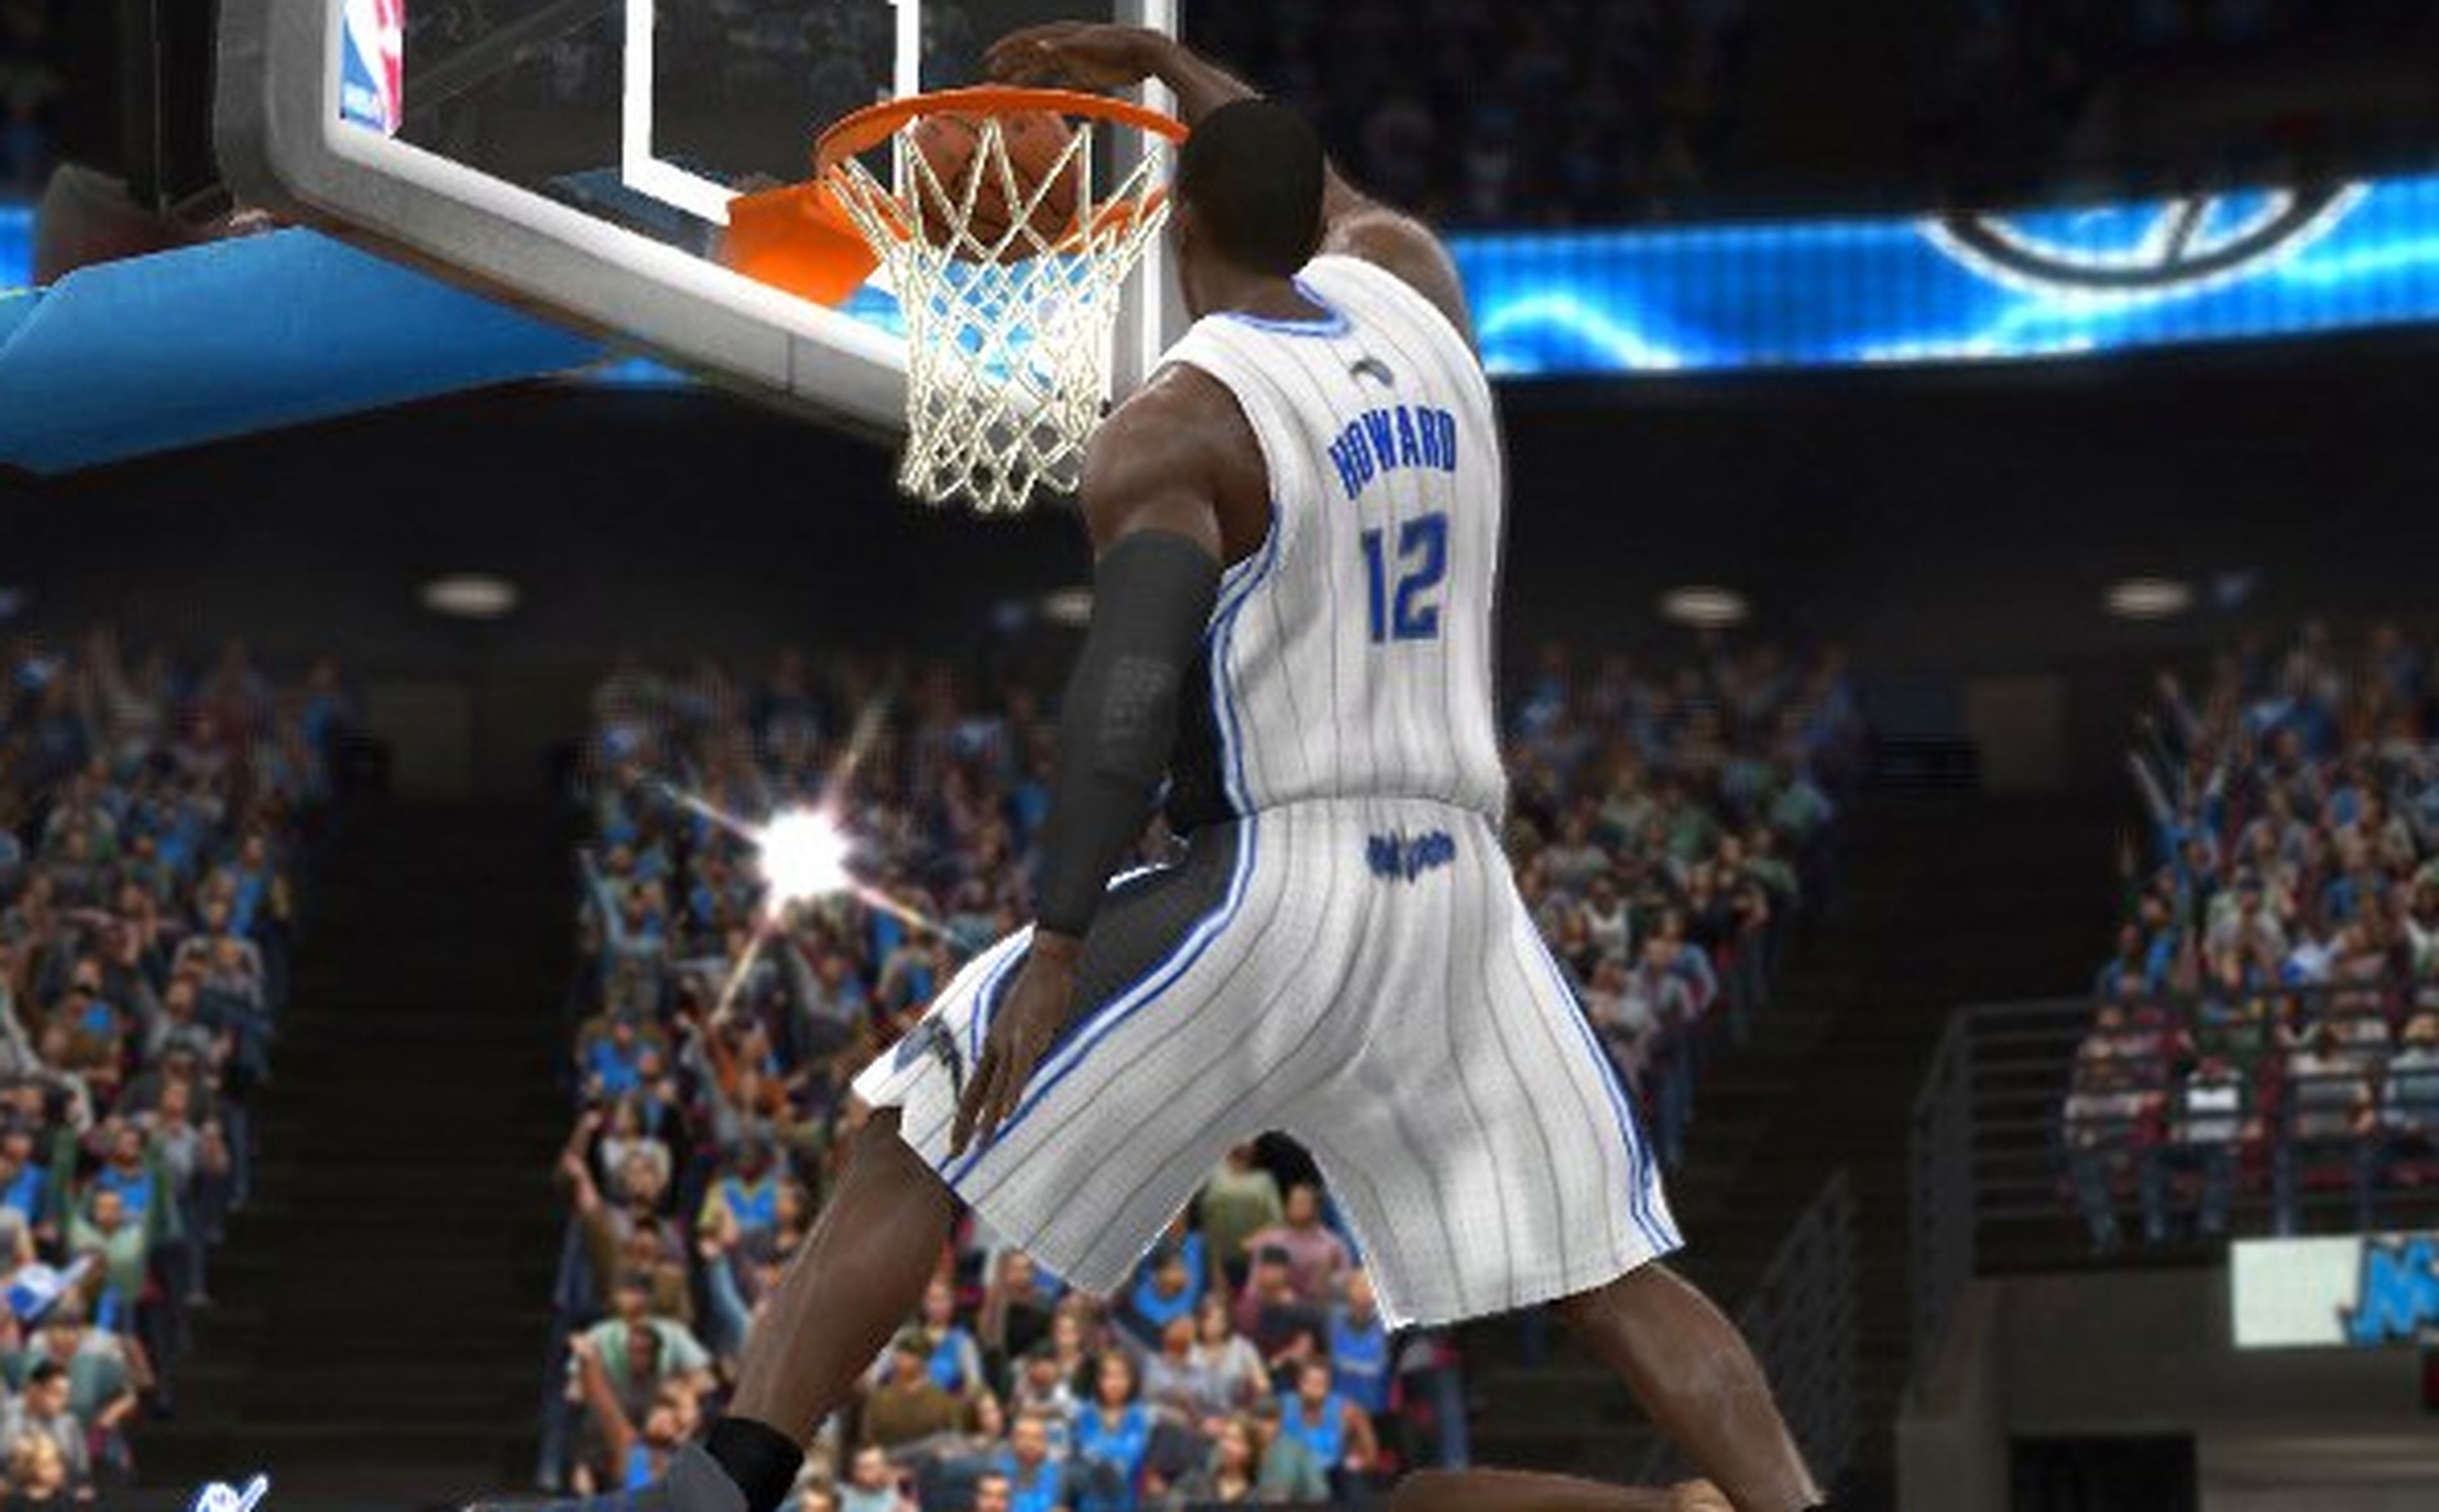 EA mostrará NBA Live 13 en pocos días